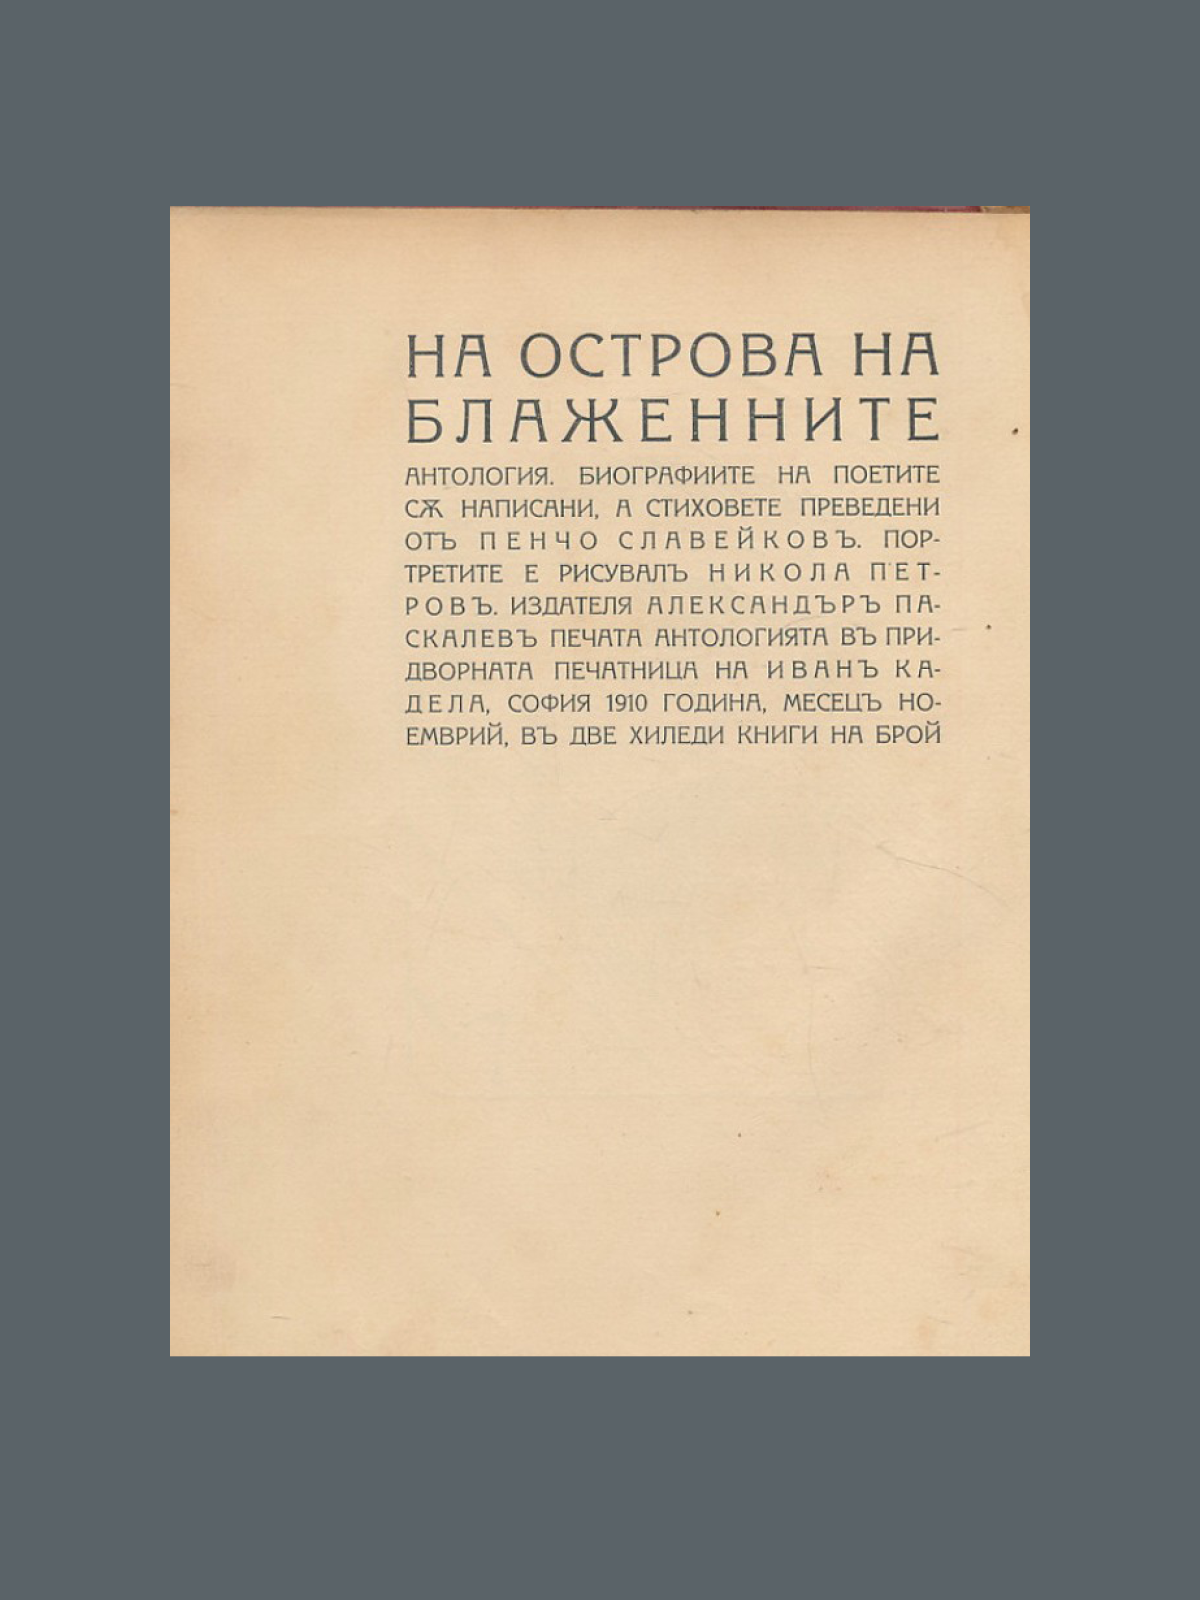 Пенчо Славейков. На острова на блаженните (1910)